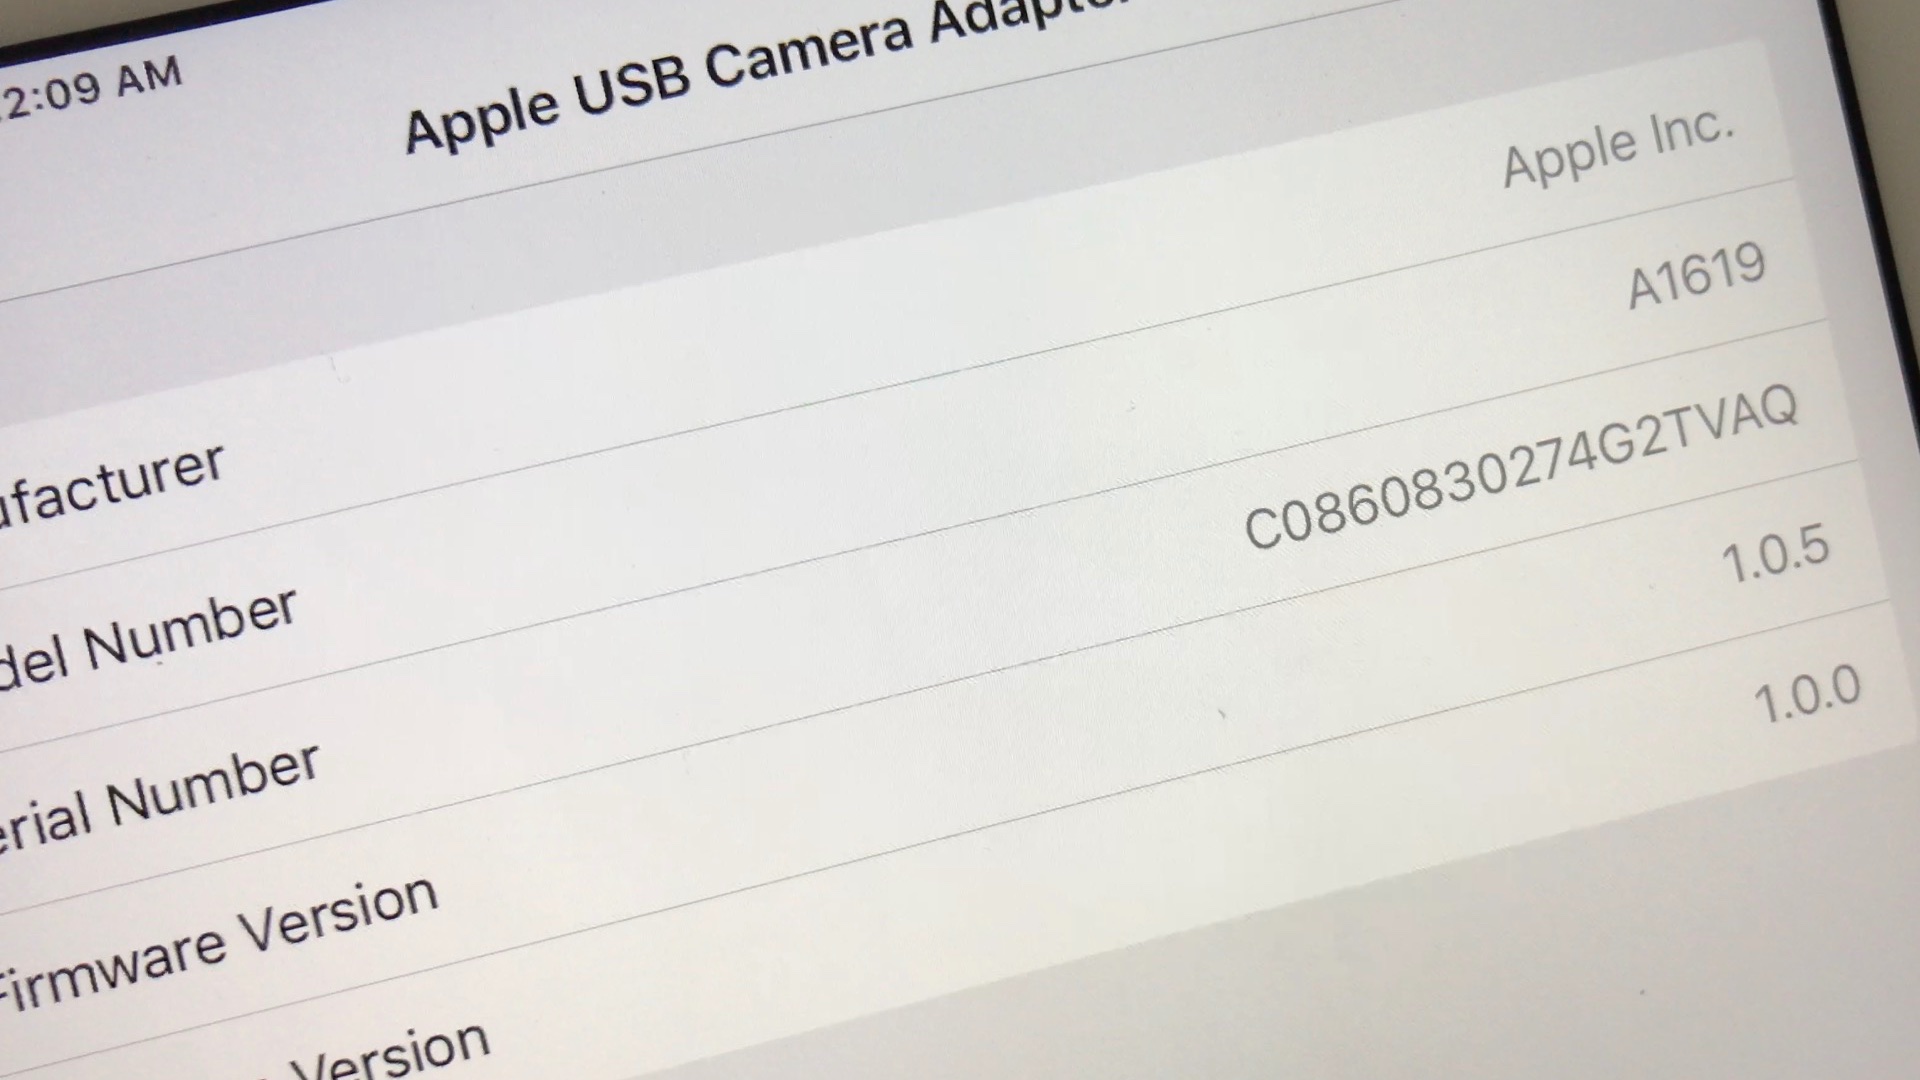 Lightning to USB 3 Camera Adapter - Apple (FR)